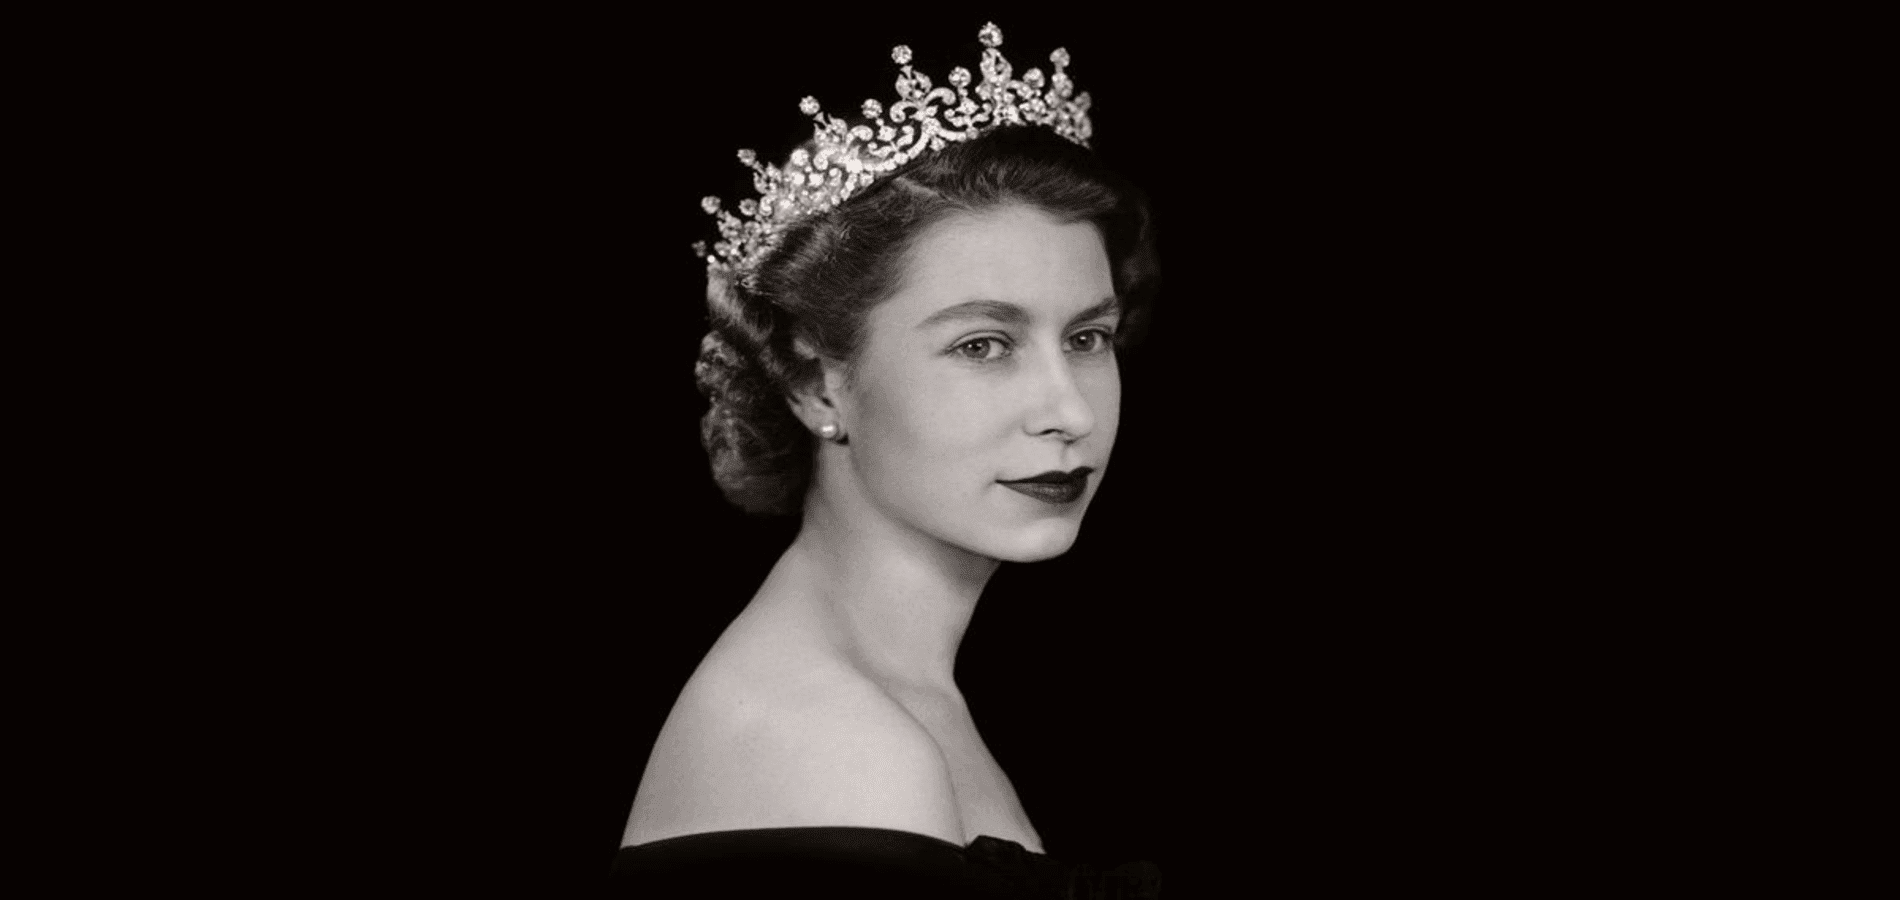 Queen Elizabeth II: A Monarchy Heritage